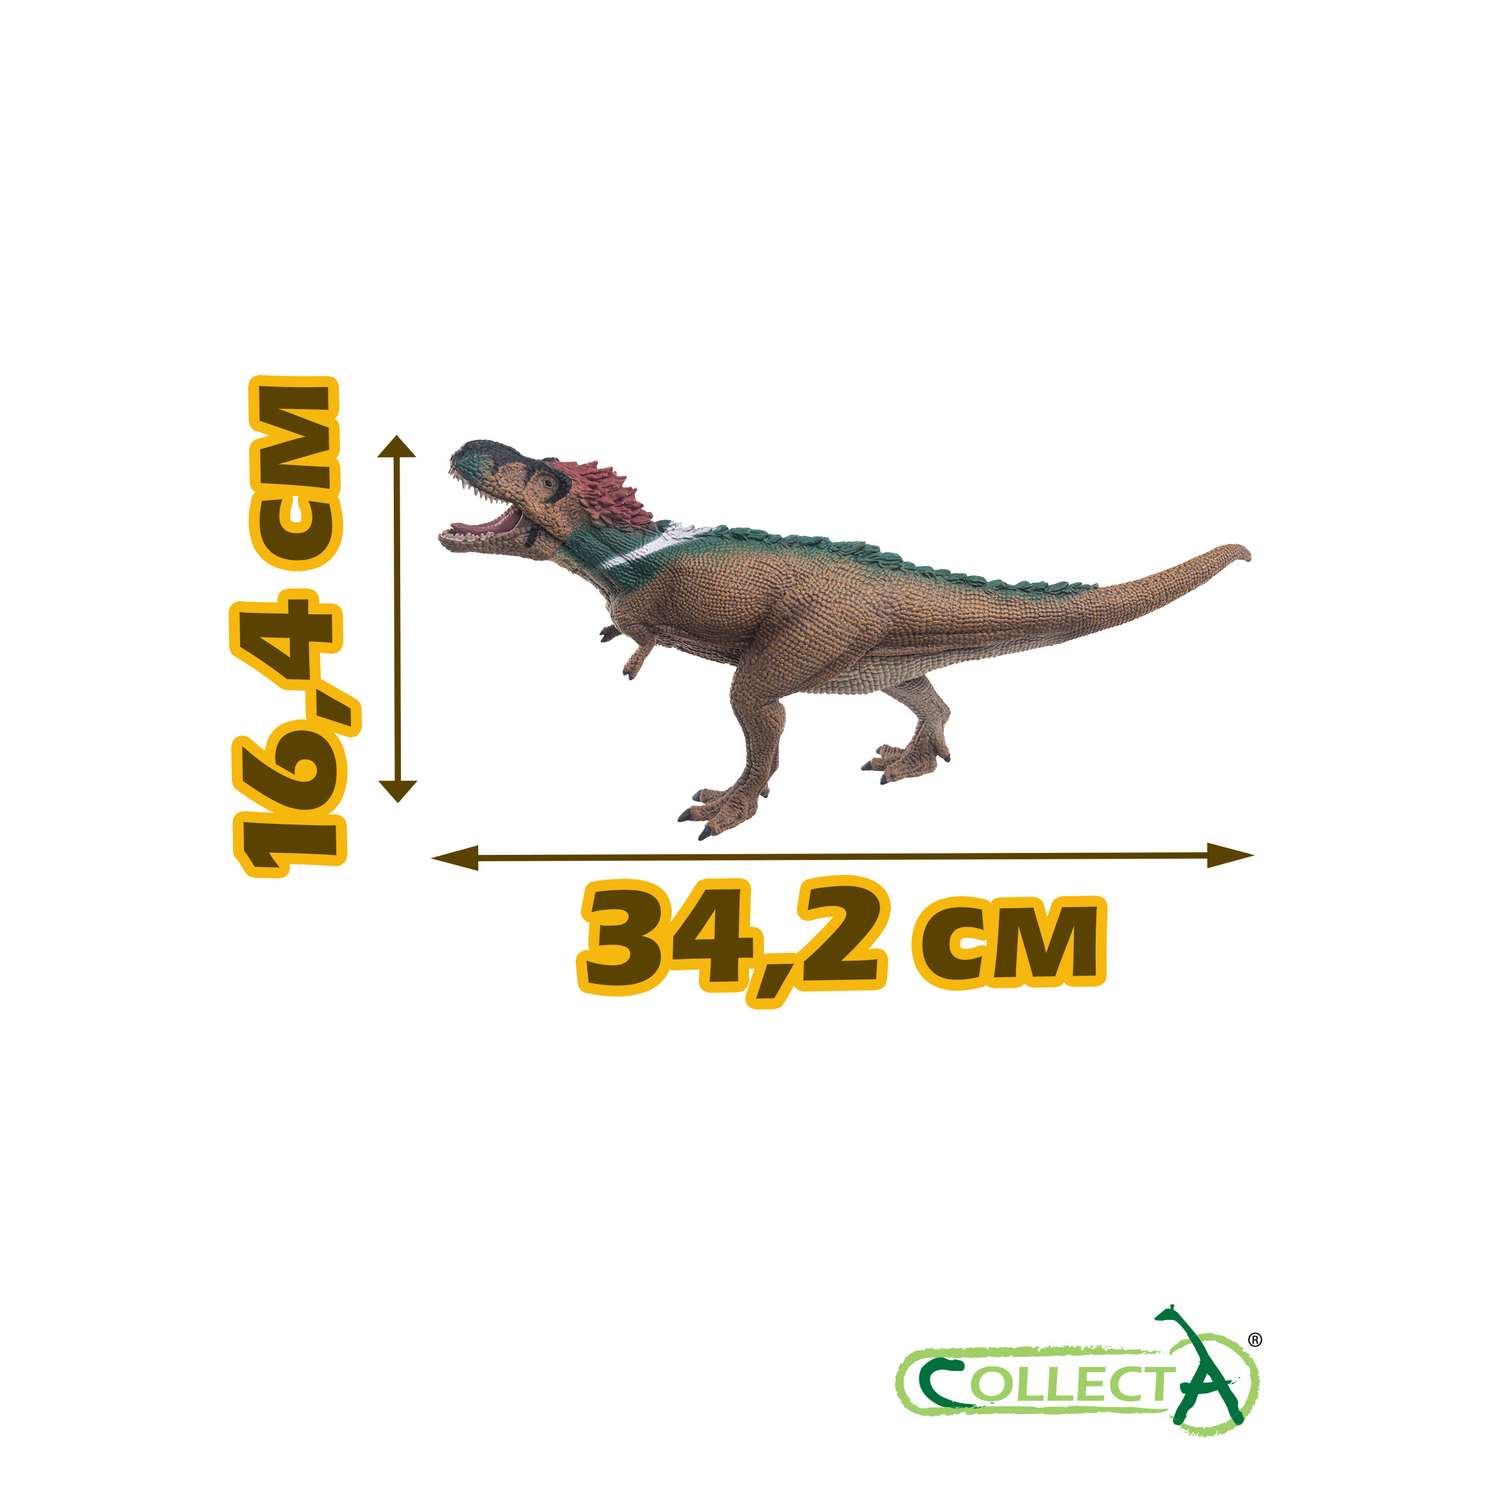 Игрушка Collecta Пернатый Тираннозавр Рекс с подвижной челюстью 1:40 фигурка динозавра - фото 2